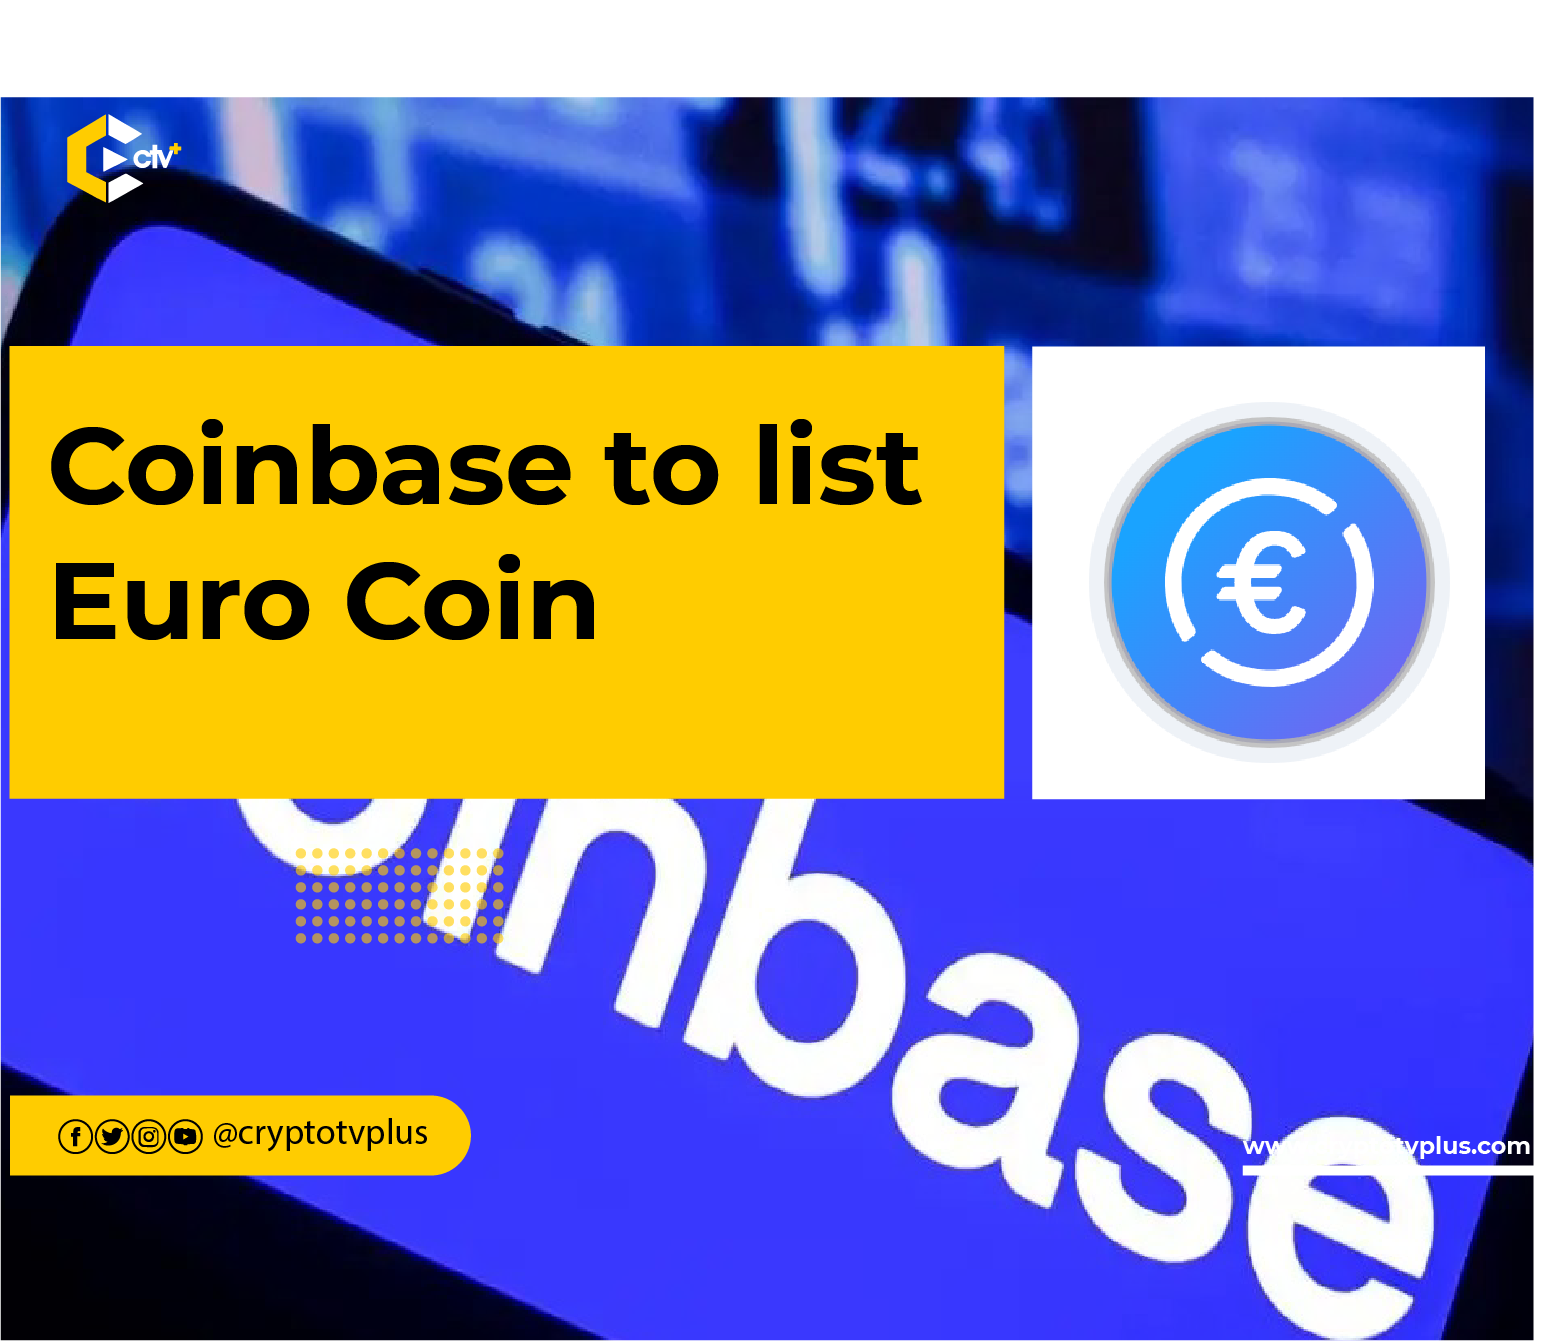 Coinbase to list Eurocoin